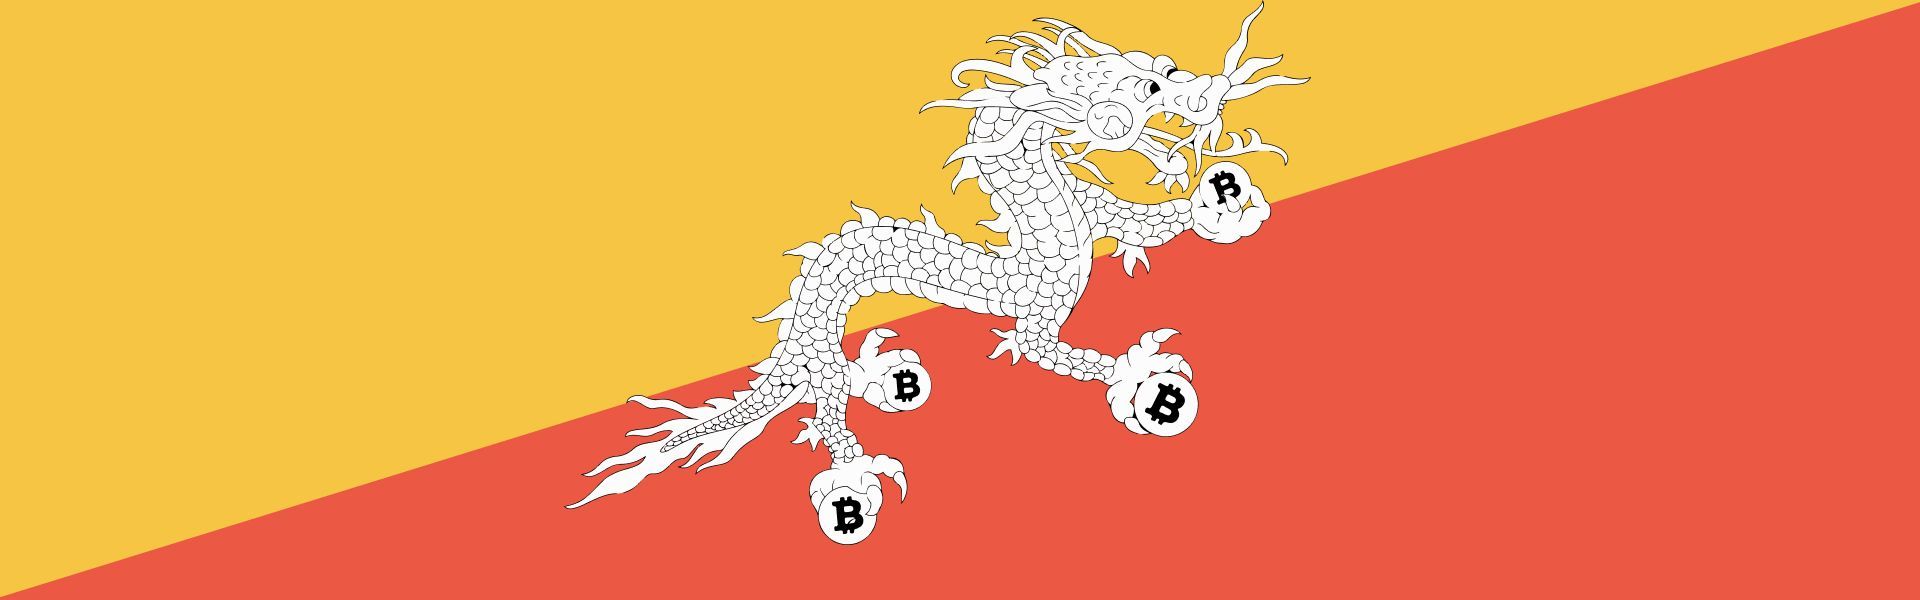 У Бутані виявили таємні майнінгові дата-центри